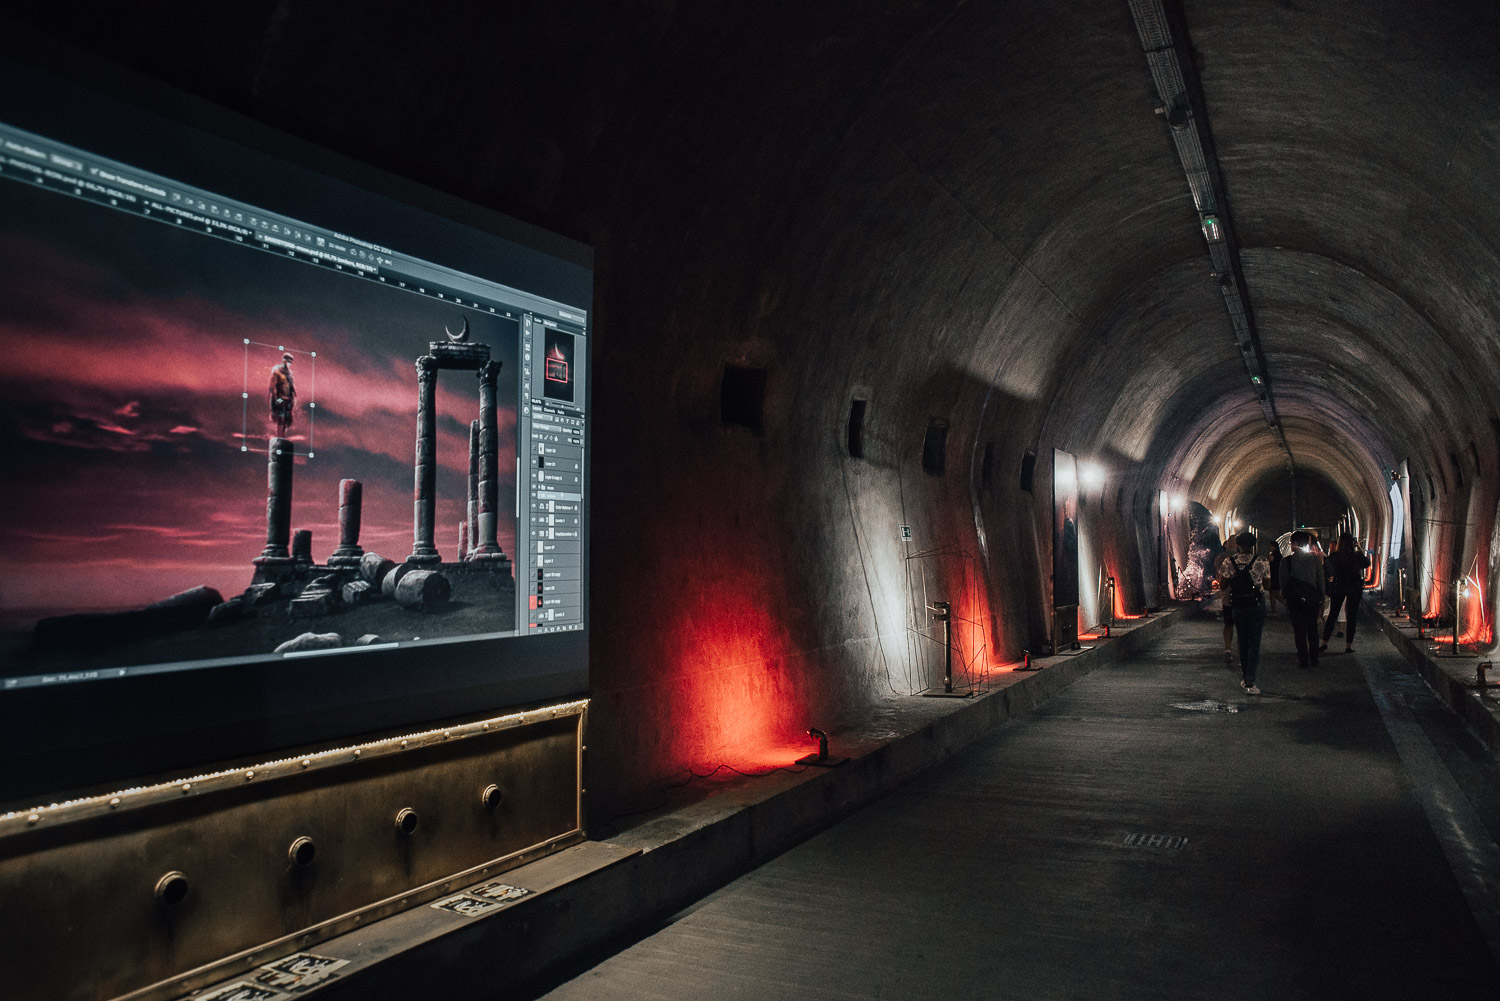 Photoshop Art Installation in Grič Tunnel